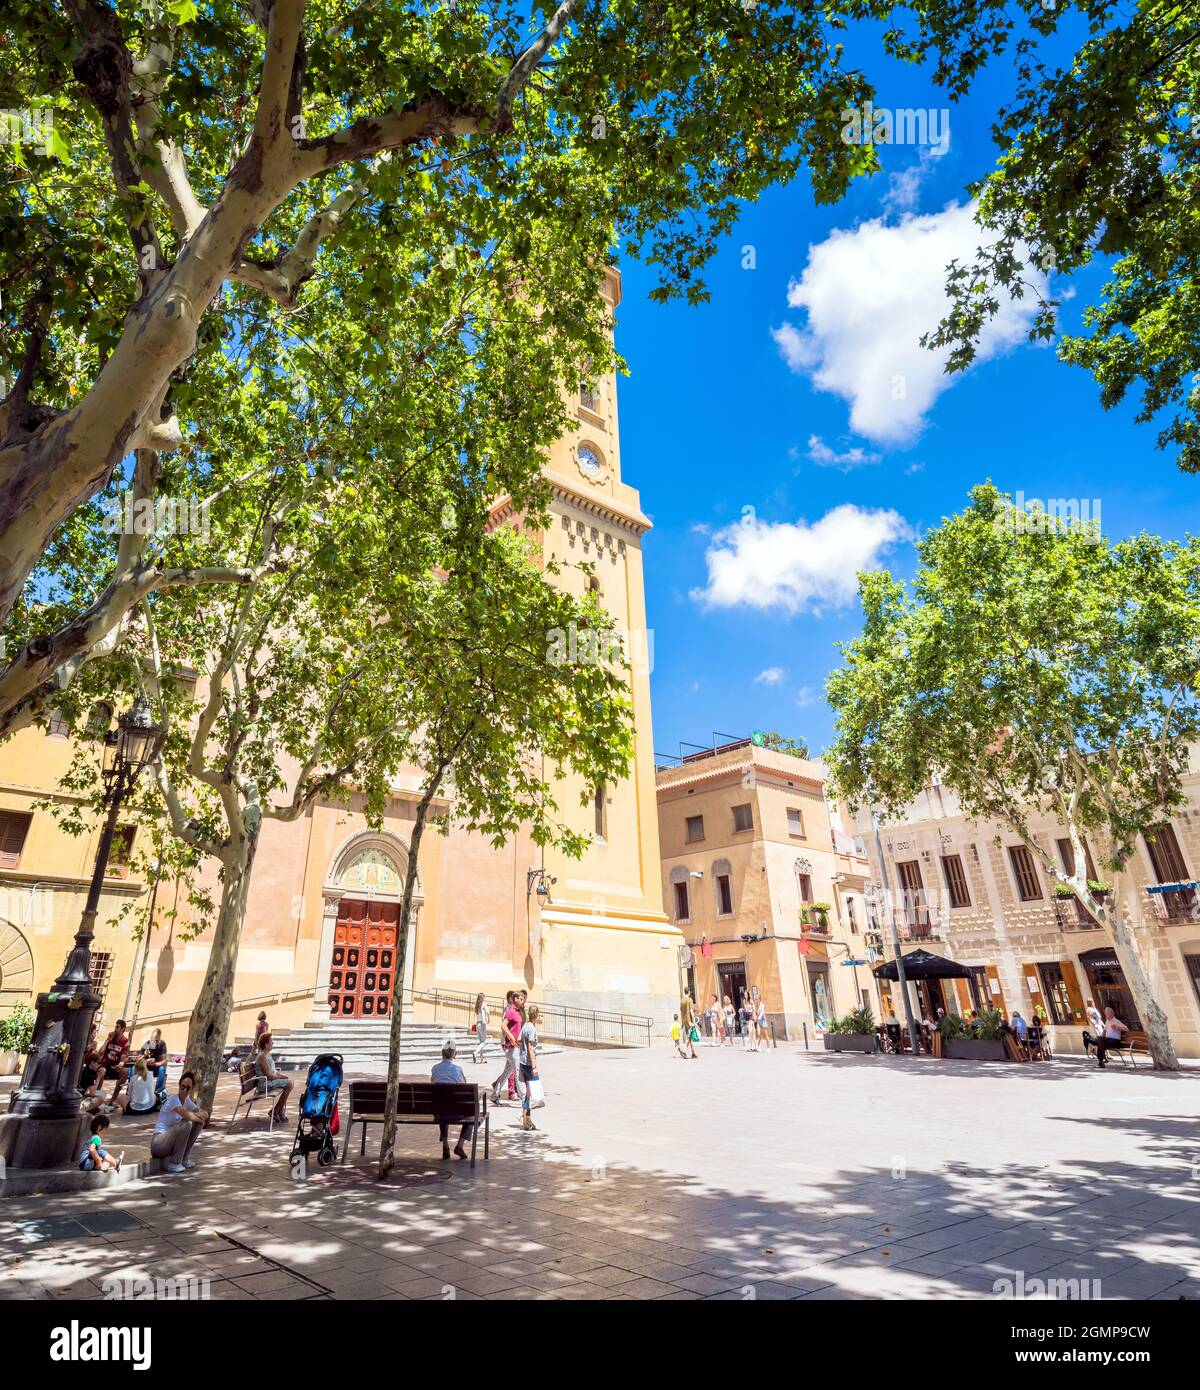 Barcelona, Spanien - 7. Juli 2017: Tagesansicht von Plaça de la Concòrdia und Església de Santa Maria del Remei mit Einheimischen auf Bänken in Barcelona, Spanien. Stockfoto